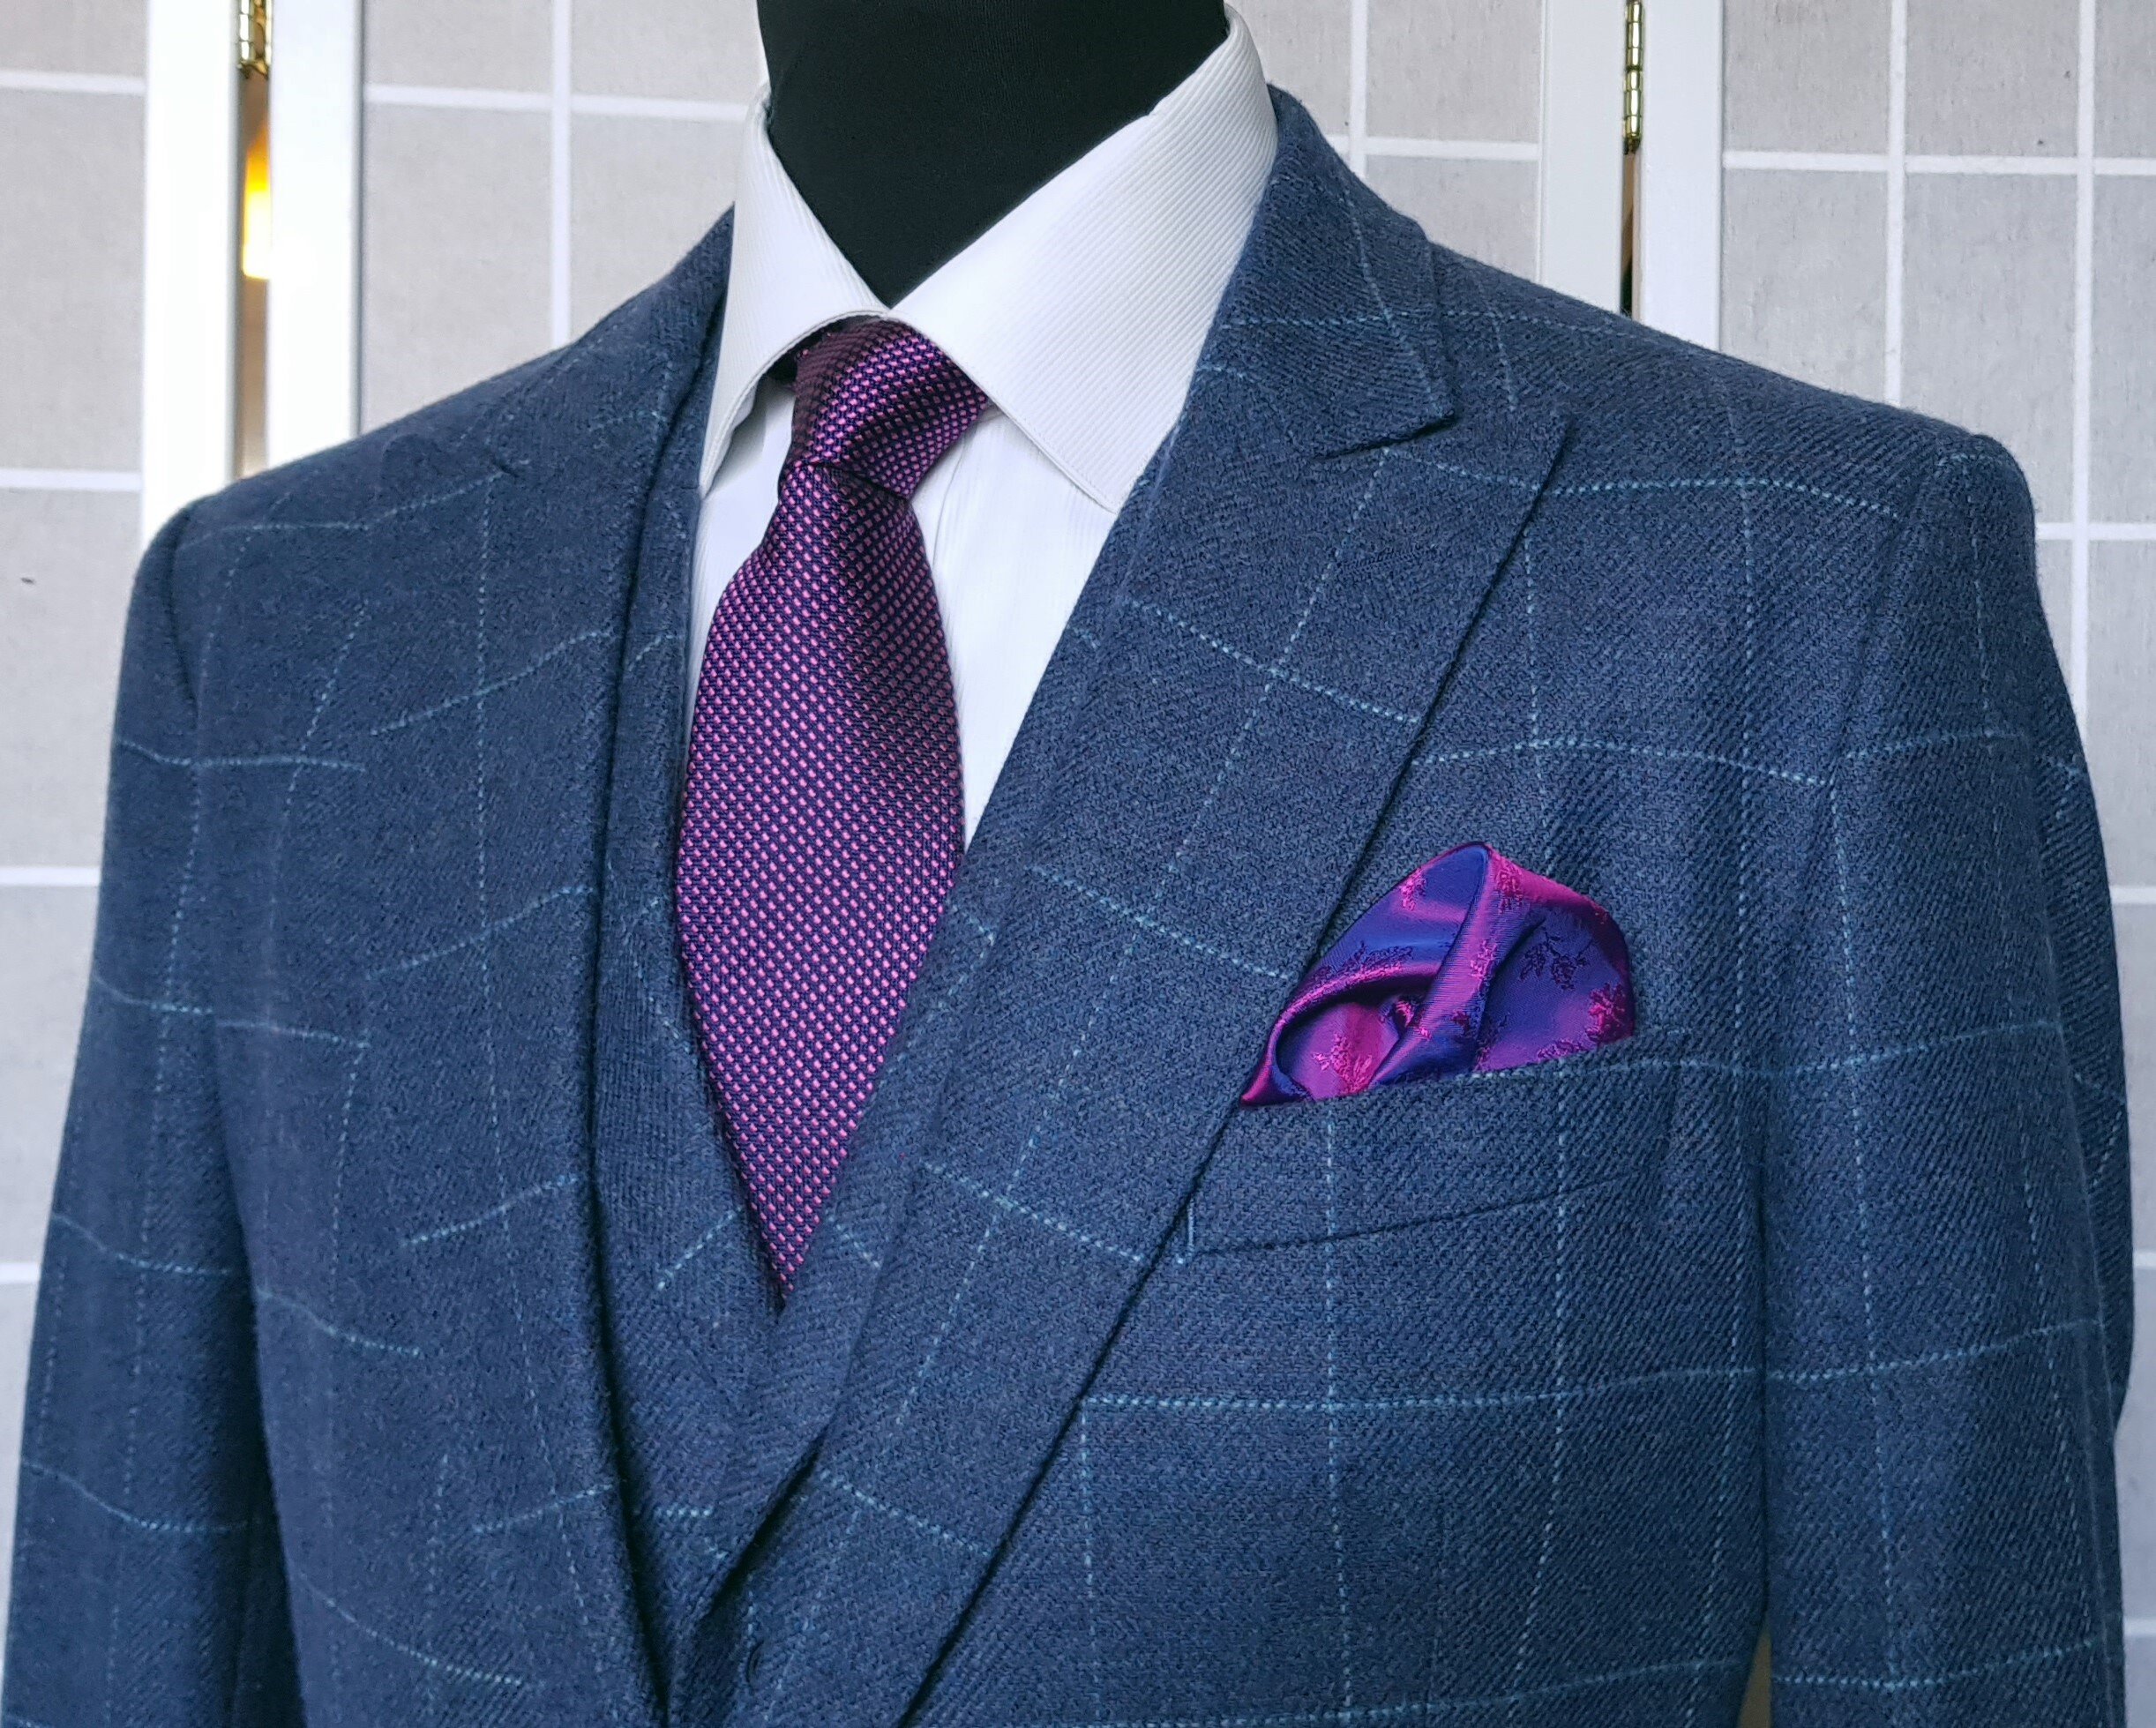 3 Piece suit in Blue Check Tweed (14).jpg